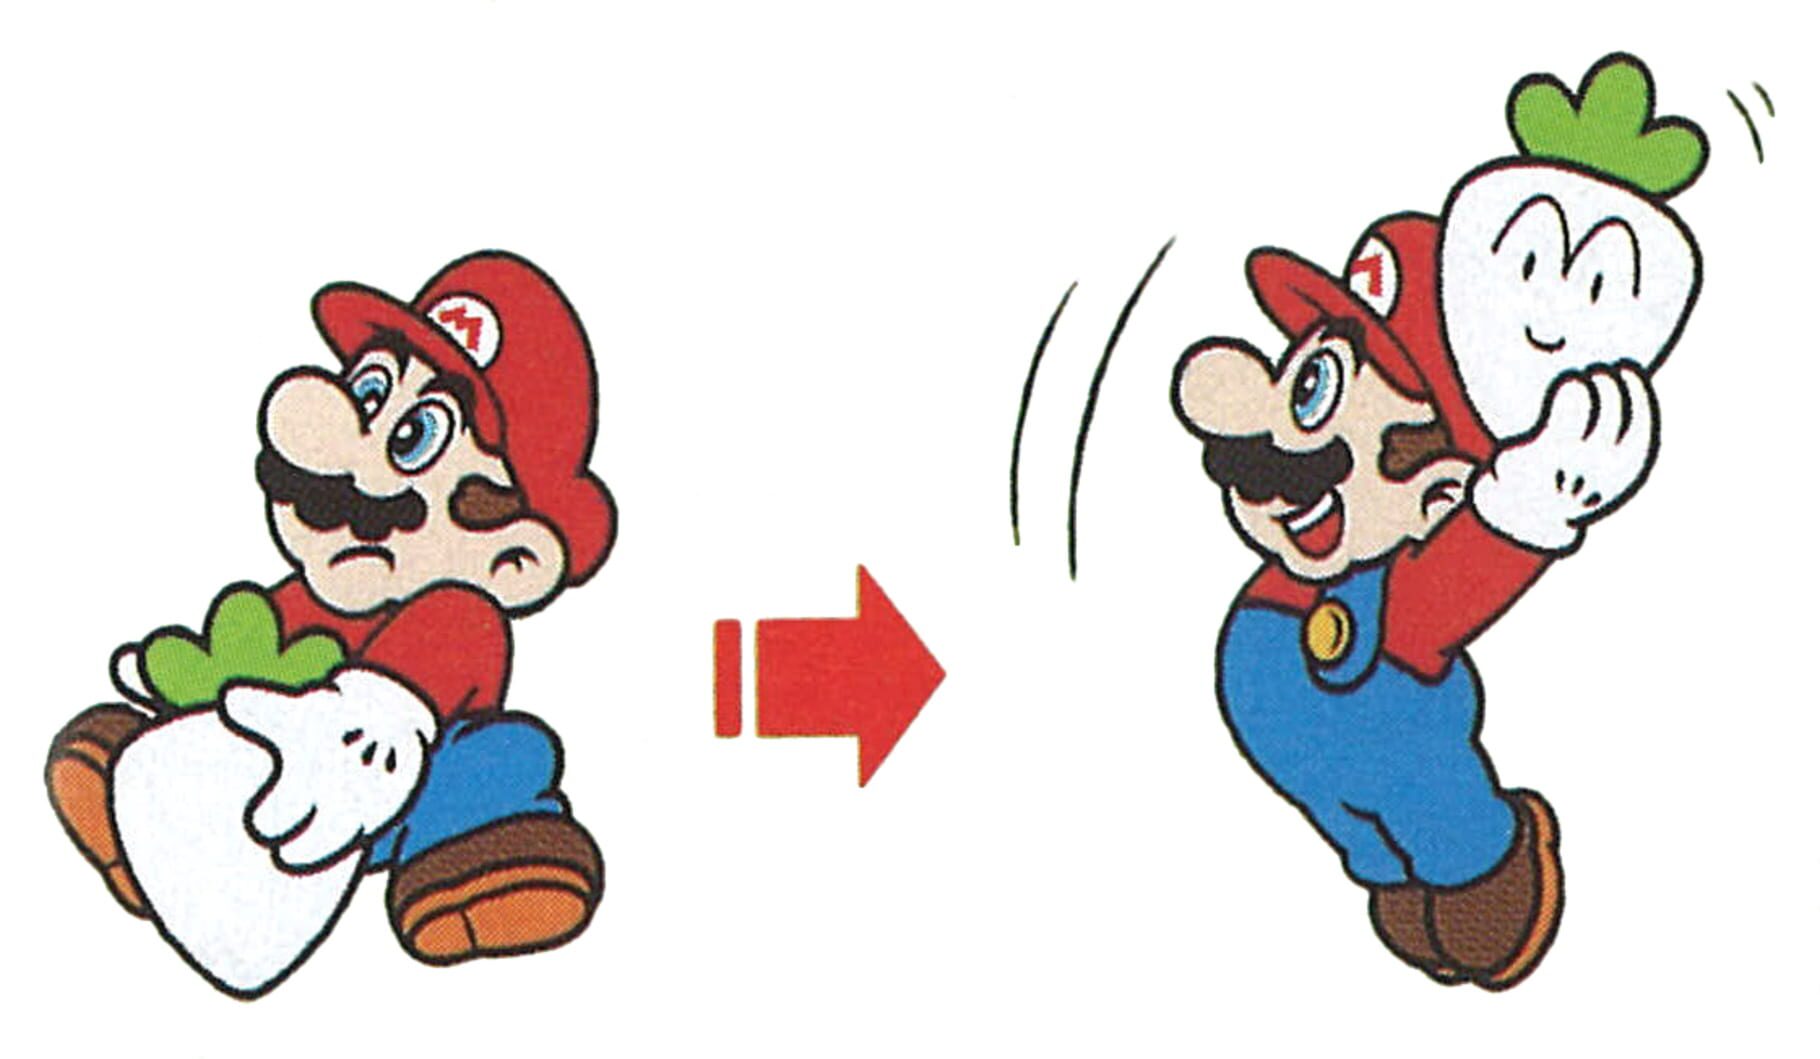 Super Mario All-Stars Image